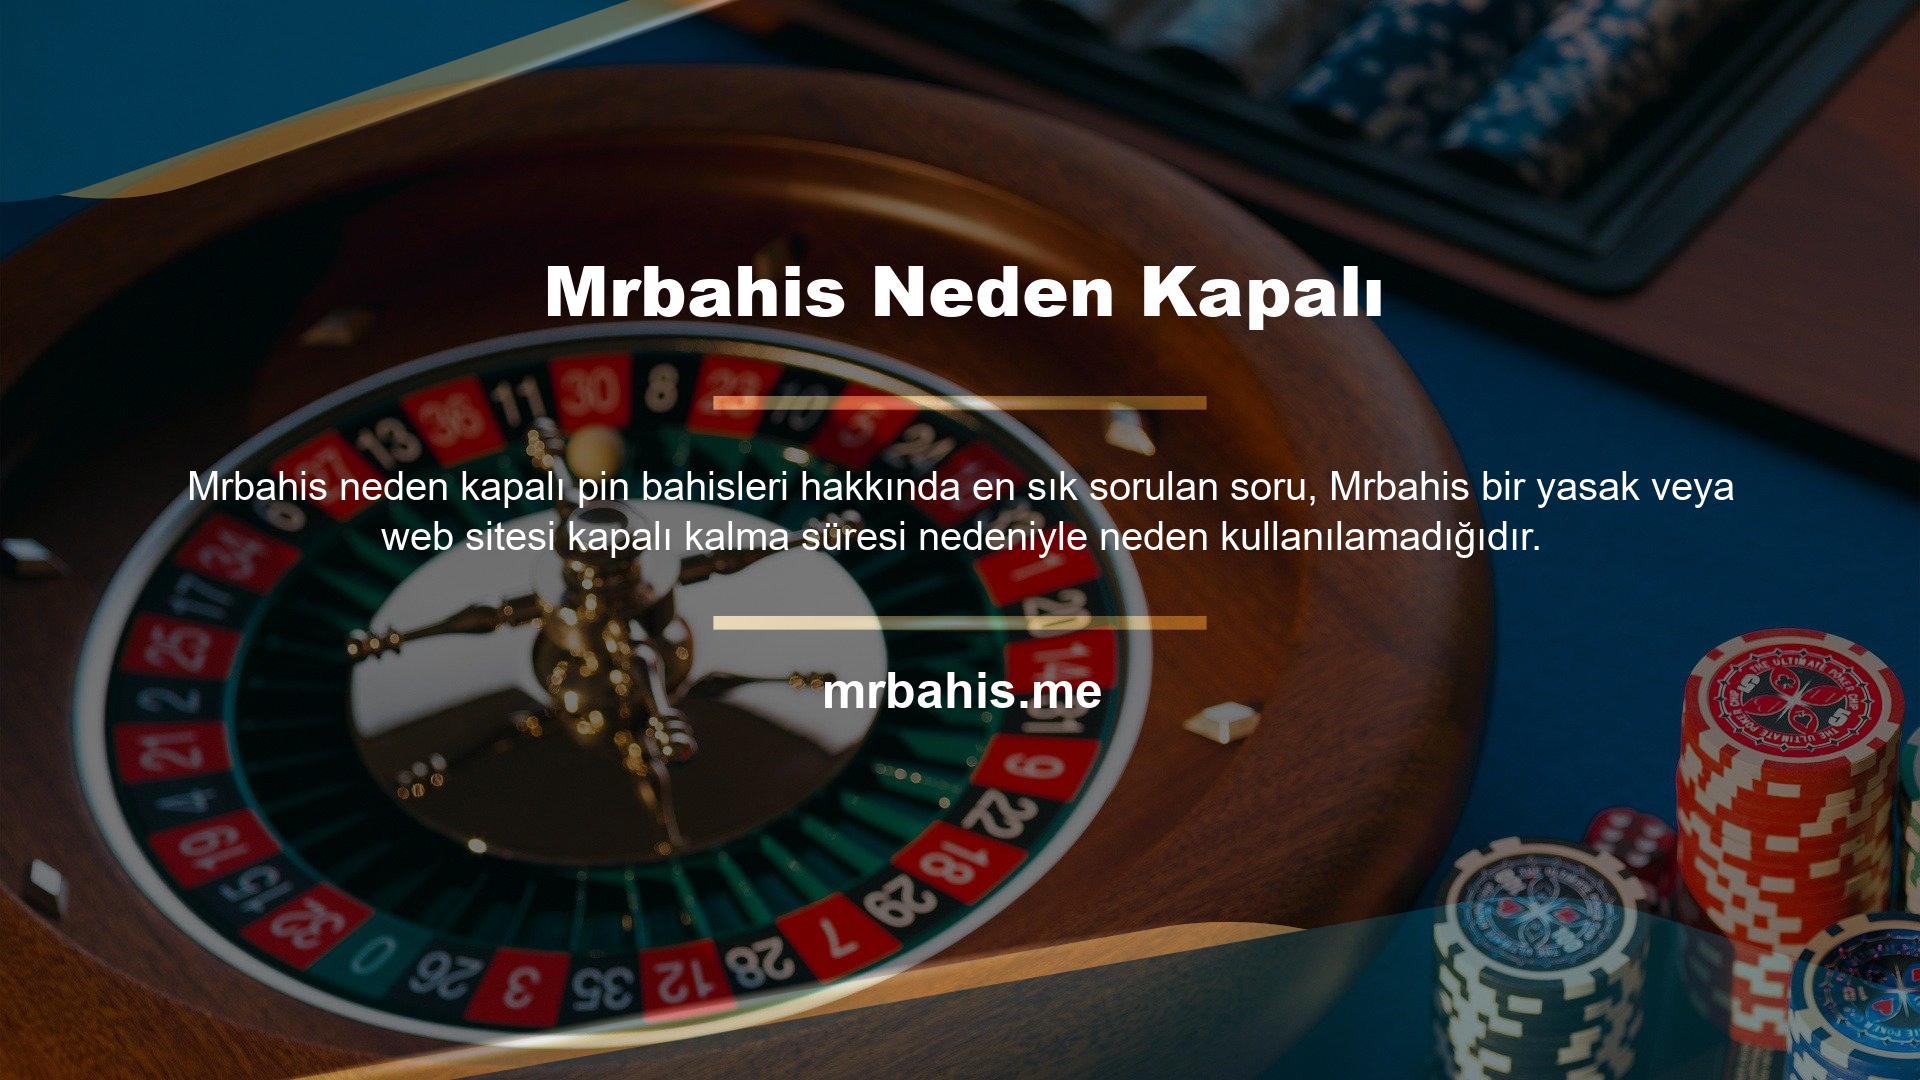 Tüm online casino siteleri gibi yasa dışı olduğu düşünülen Mrbahis bu nedenlerle açıldıktan sonra kapatıldı